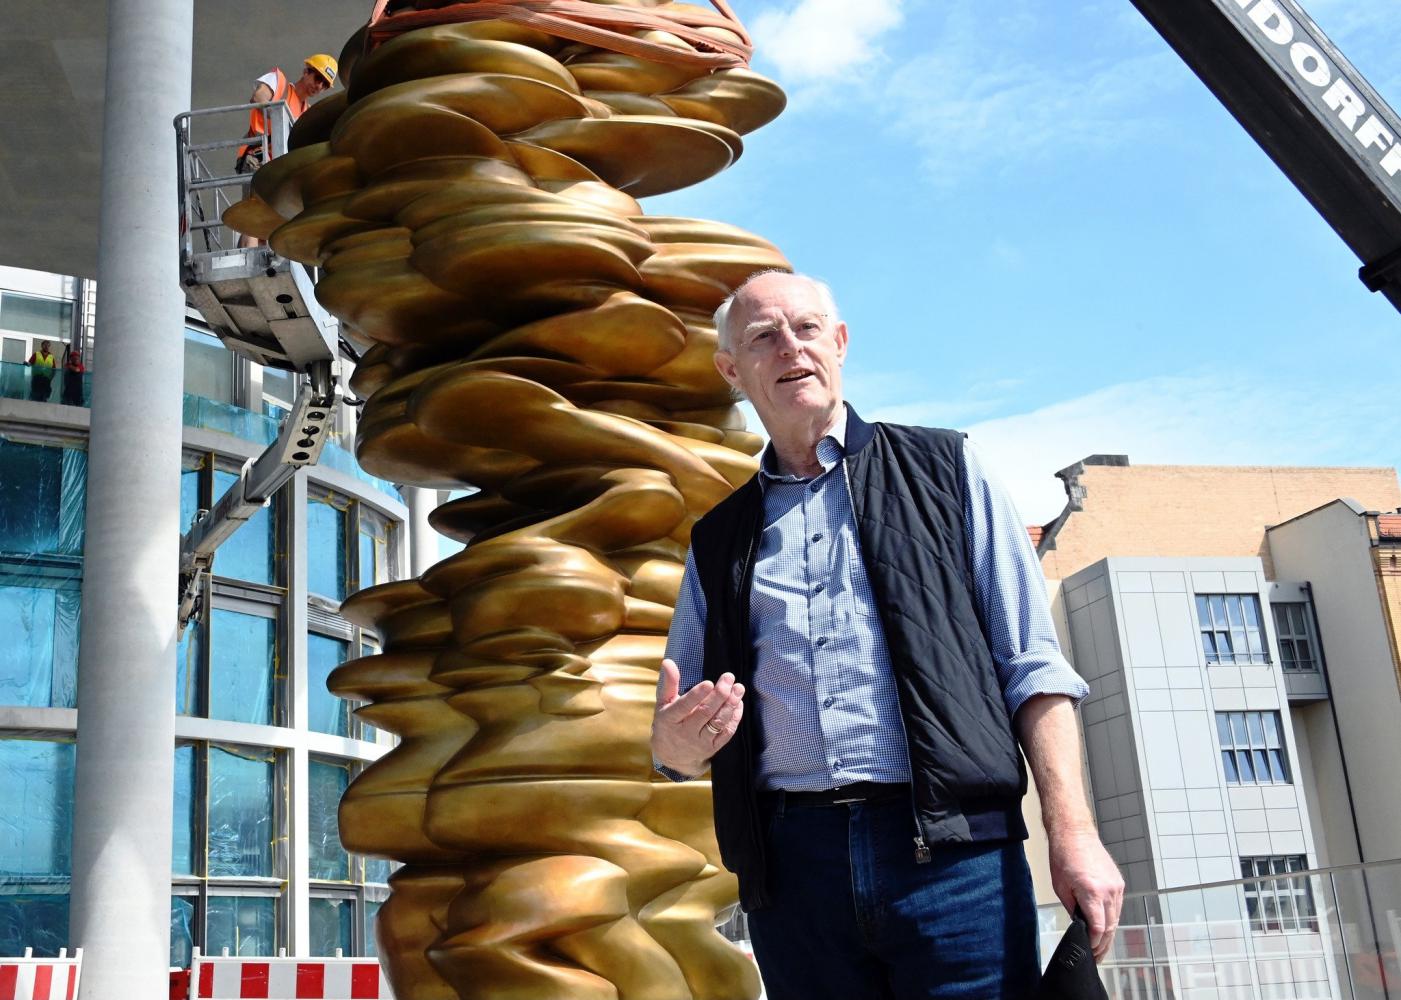 Bildhauer Tony Cragg vor seiner Bronze-Skulptur "Werdendes"